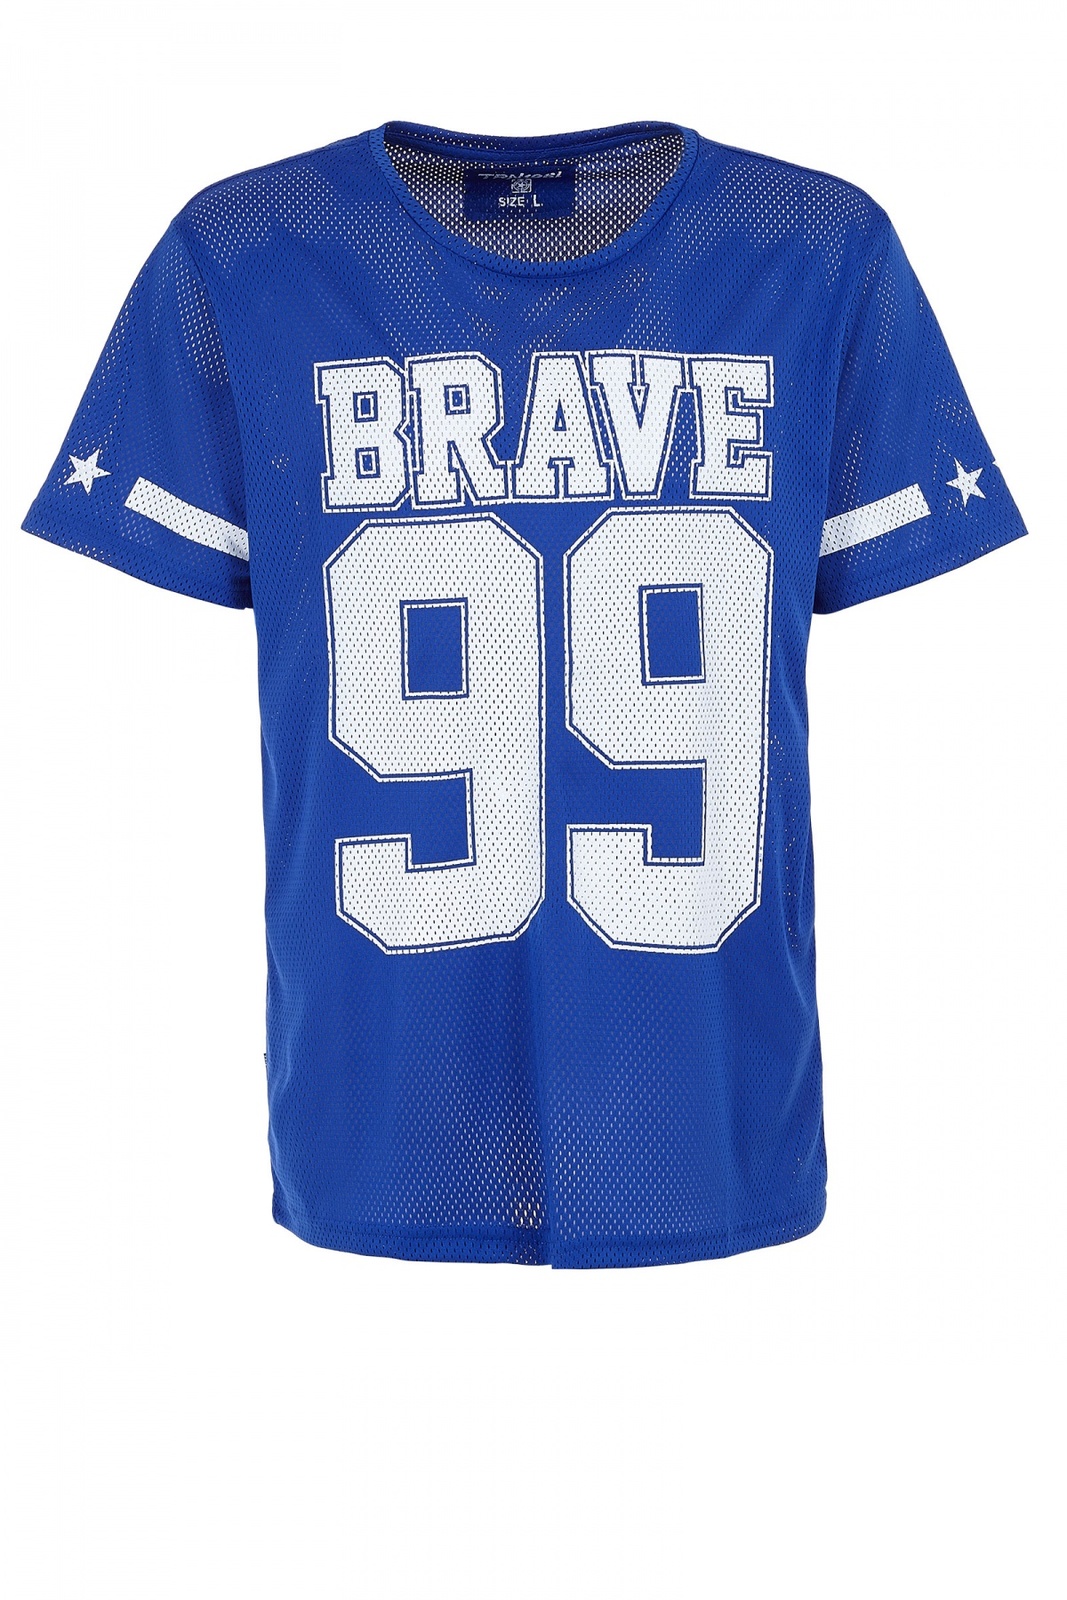 Terranova Brave 99 feliratos sportmez jellegű t-shirt 2015.02.28 #81081 fotója